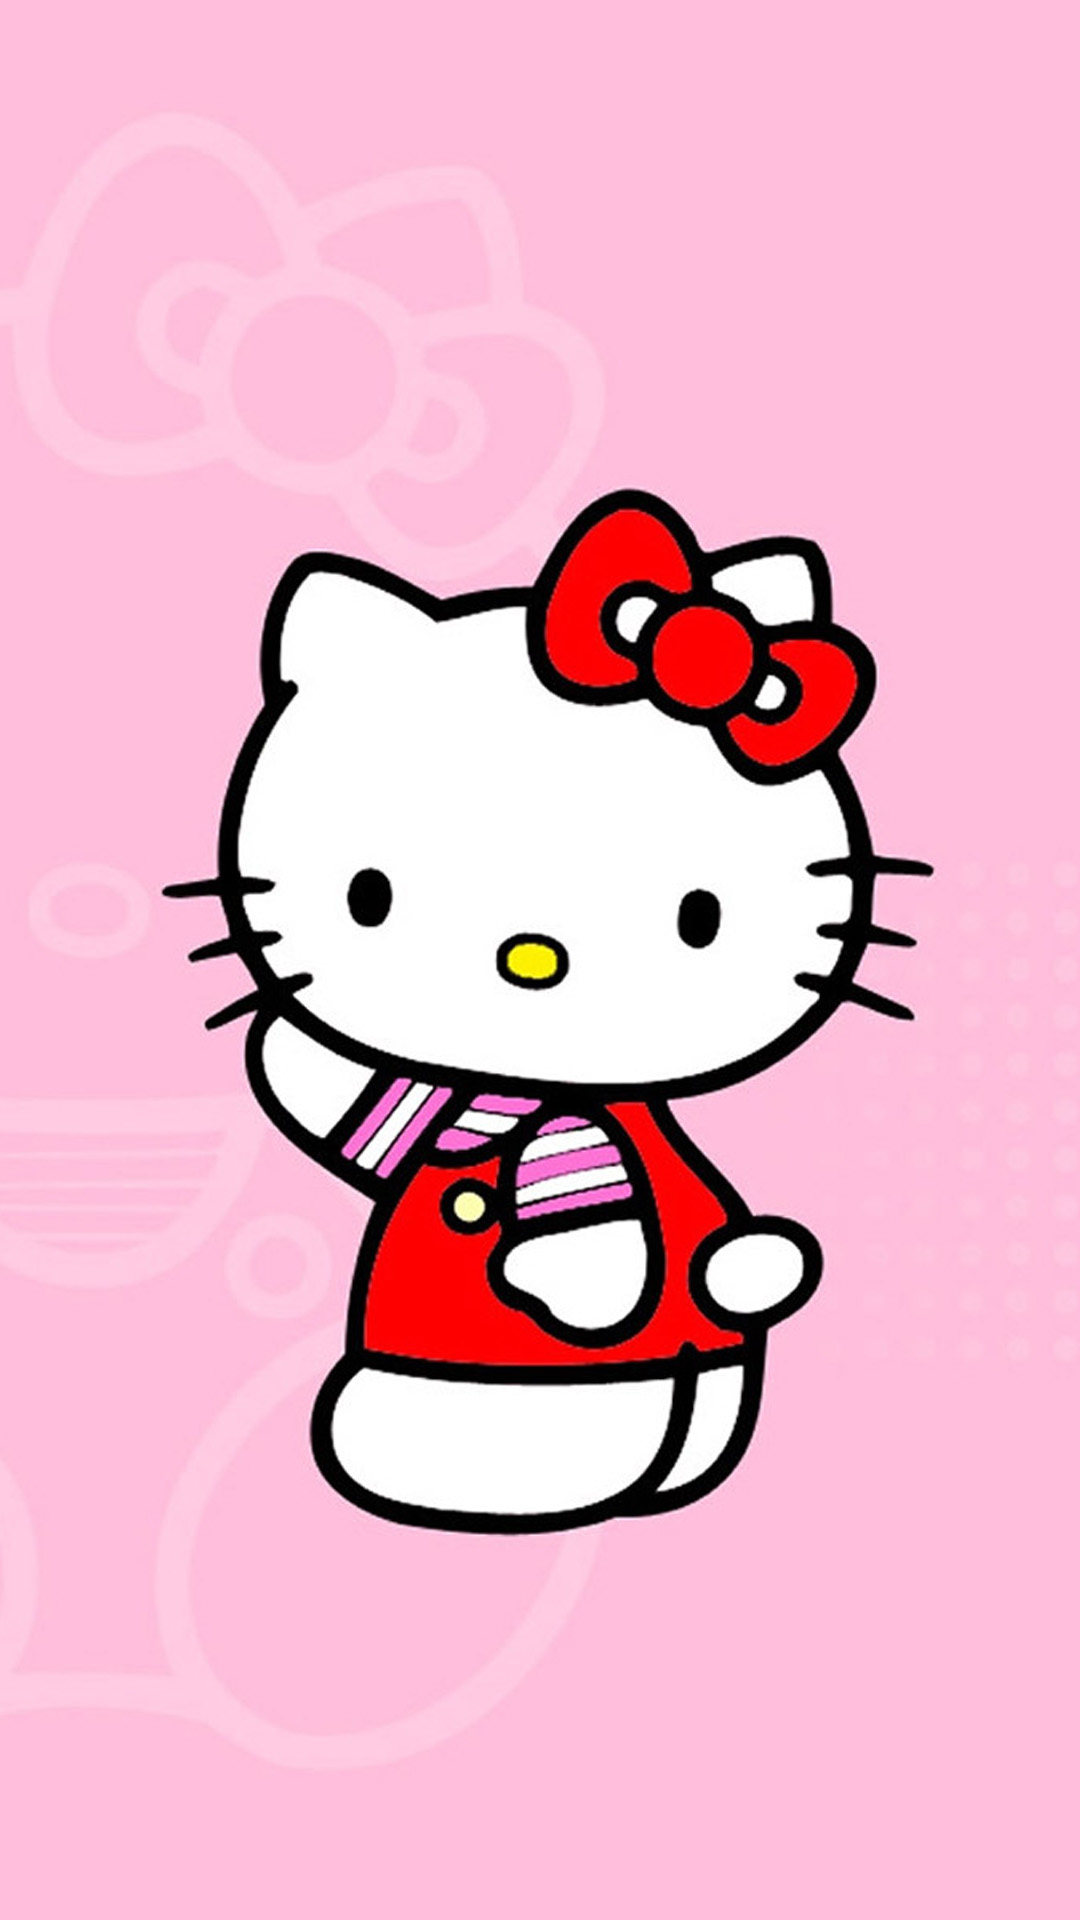 Hello Kitty – biểu tượng của sự đáng yêu và dễ thương. Bộ sưu tập hình nền Hello Kitty đầy màu sắc sẽ khiến bạn cảm thấy vô cùng tươi vui và vui tươi trong cuộc sống. Thật đáng yêu những hình ảnh này, hãy truy cập ngay và tải về để cùng khám phá những chú mèo đáng yêu này nhé.